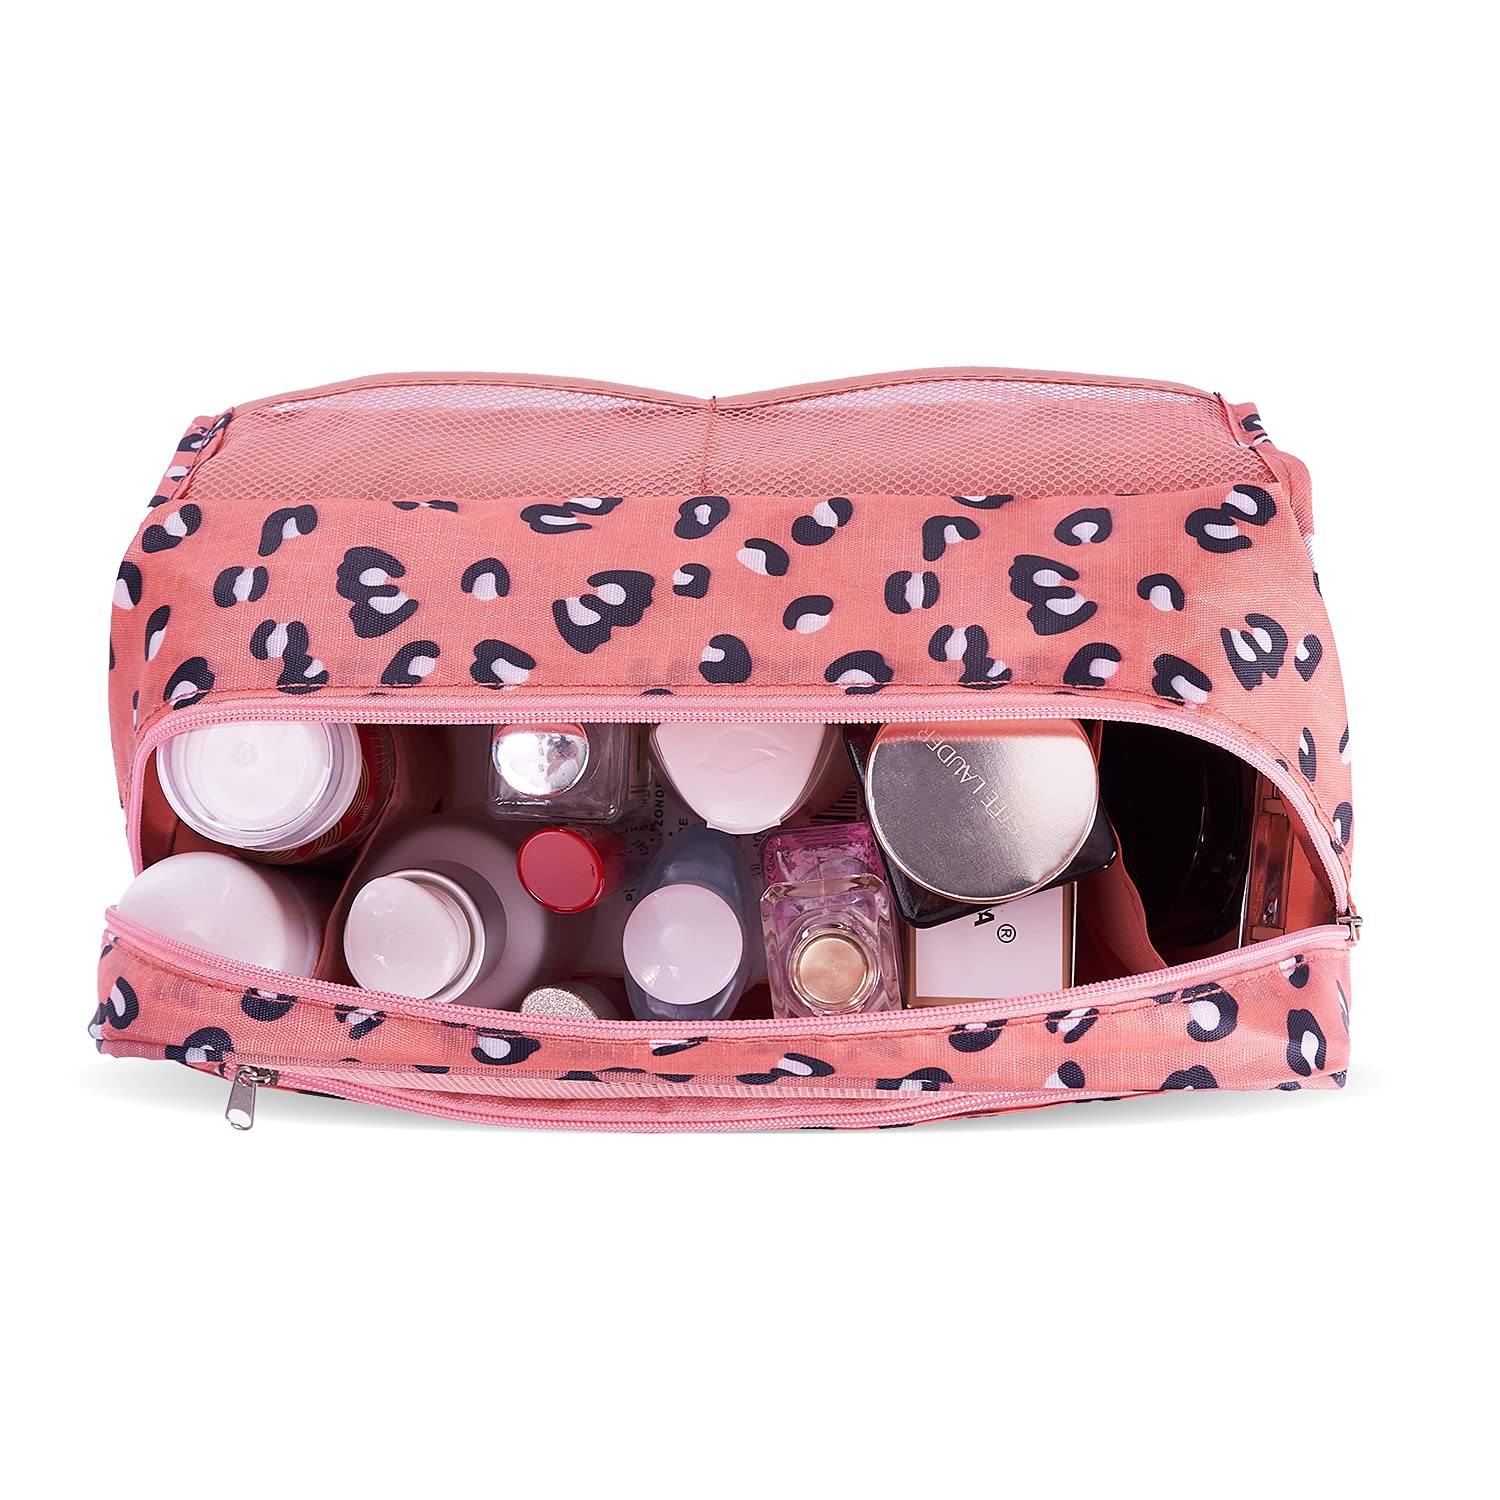 TxoLIFE Cosmetic Makeup Bag Case Hanging Toiletry Bag Travel Organizer Travel Kit for Women Men Pink Leopard